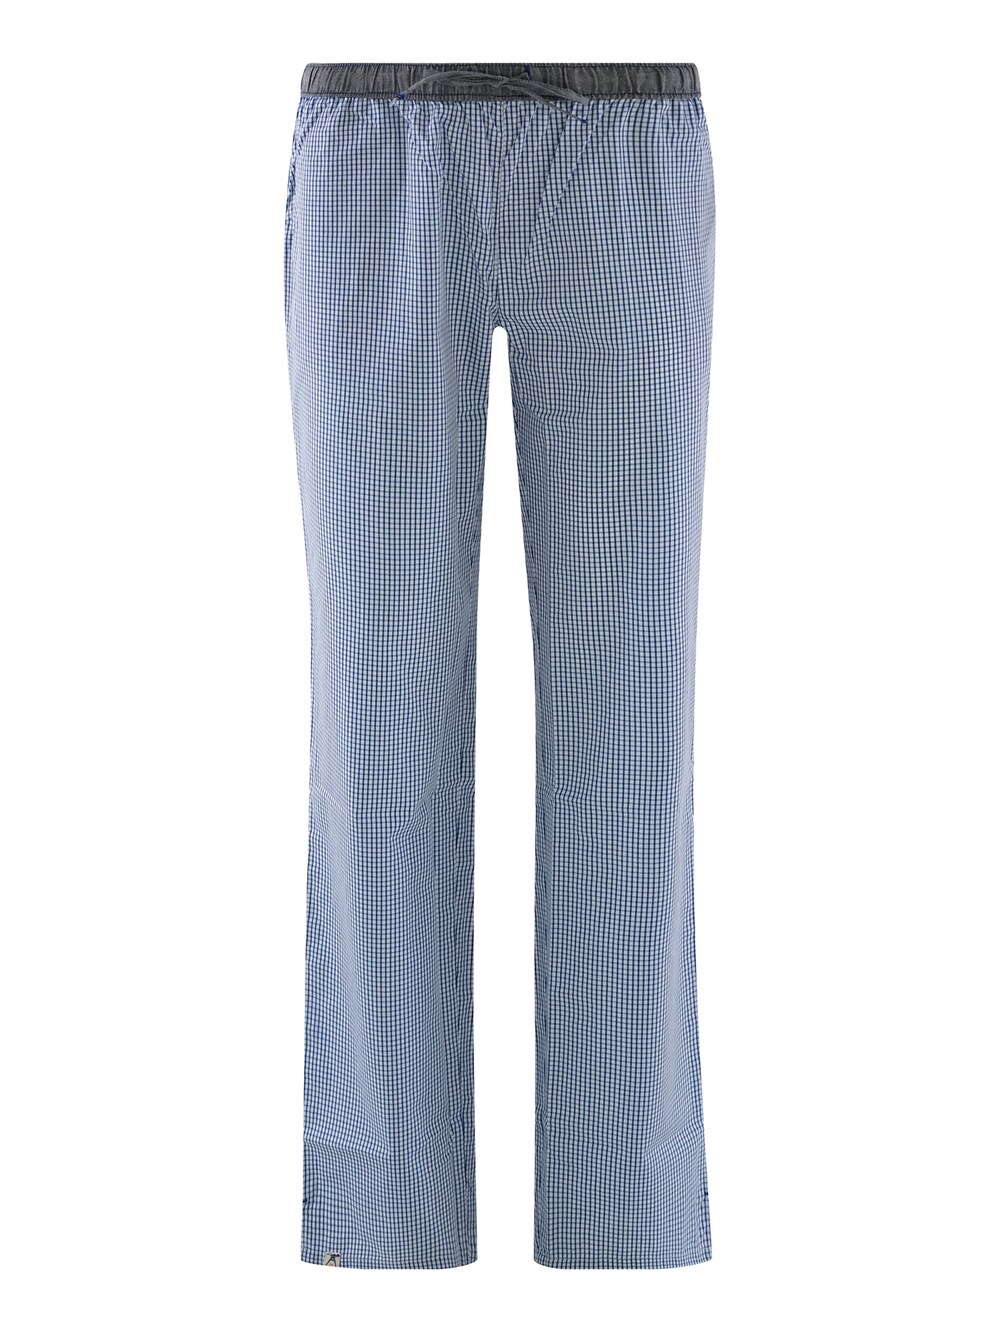 Пижамные штаны Luca David Olden Glory Pants, синий luca d altieri кепка из ткани синий